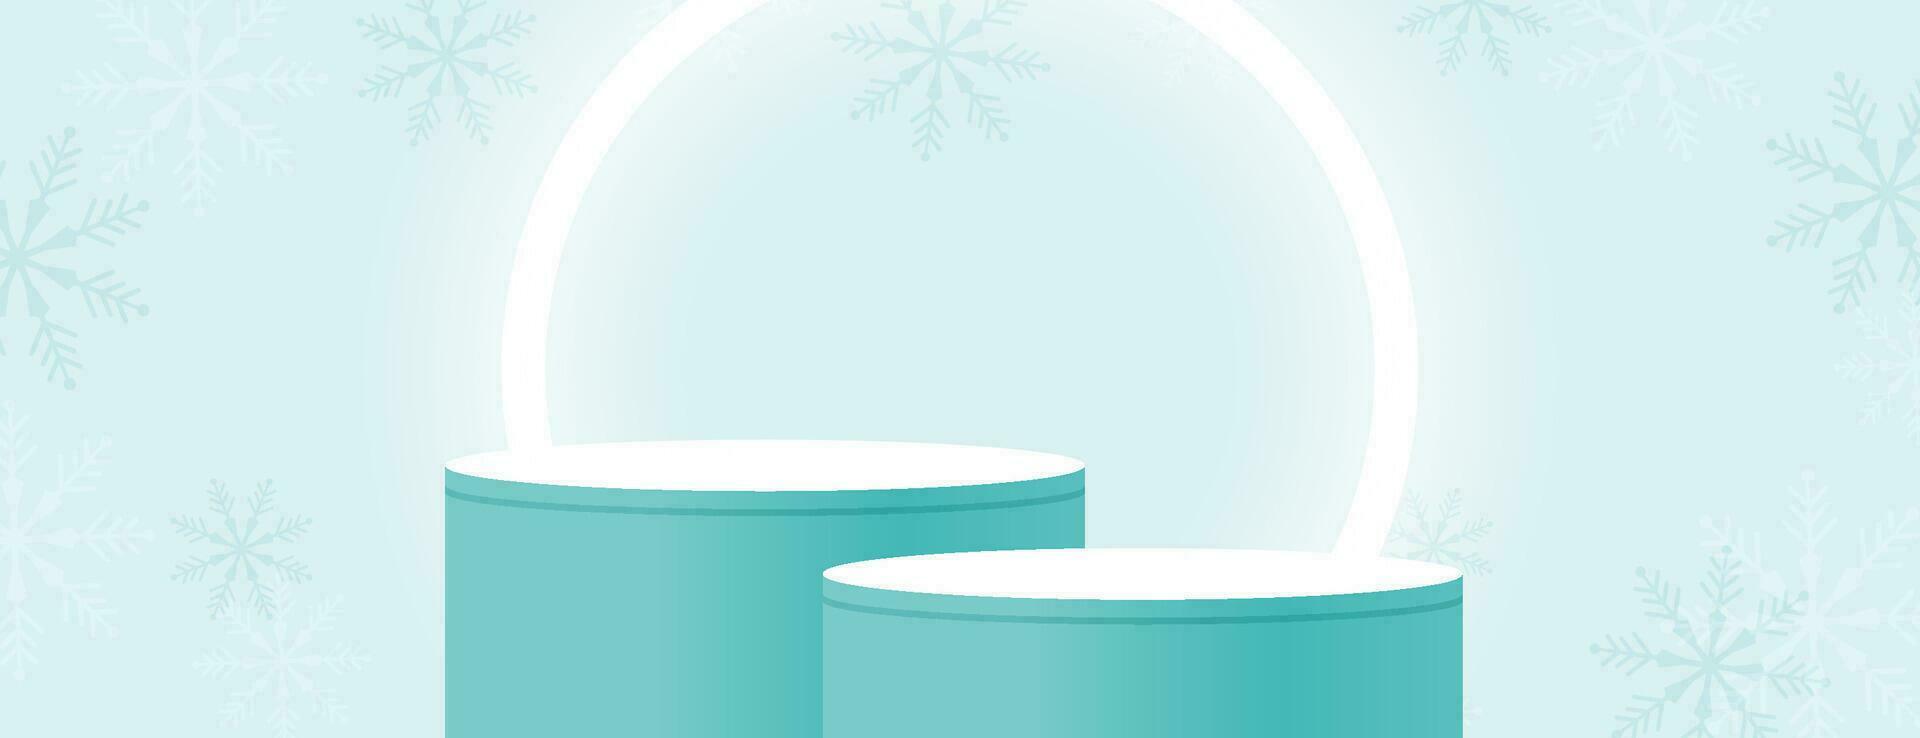 vrolijk Kerstmis banier met Product Scherm cilindrisch vorm en feestelijk decoratie voor Kerstmis vector